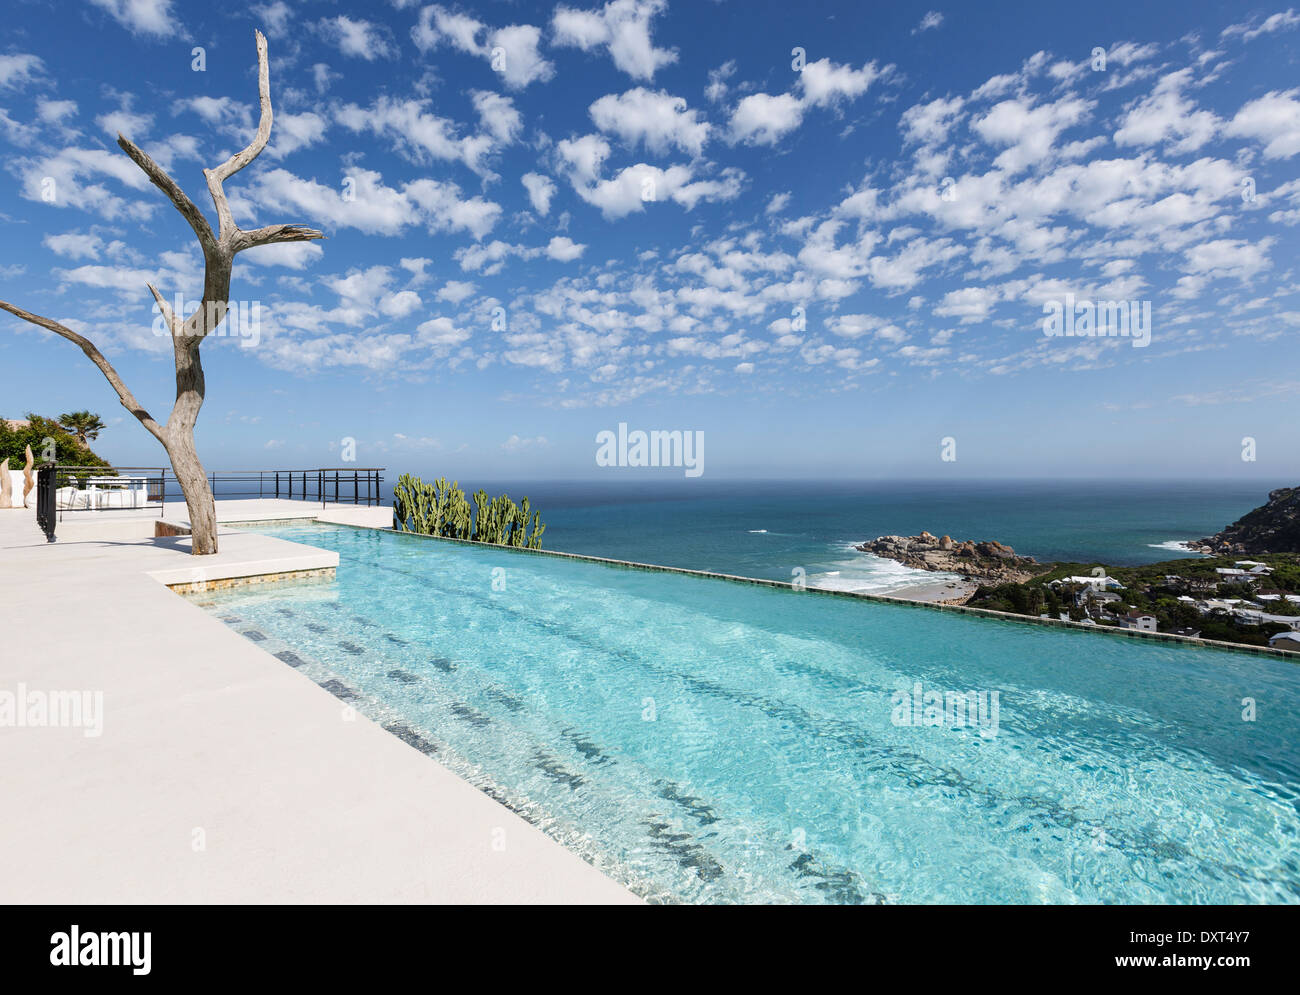 Nuages dans le ciel bleu au-dessus de l'océan de luxe avec vue sur piscine Banque D'Images